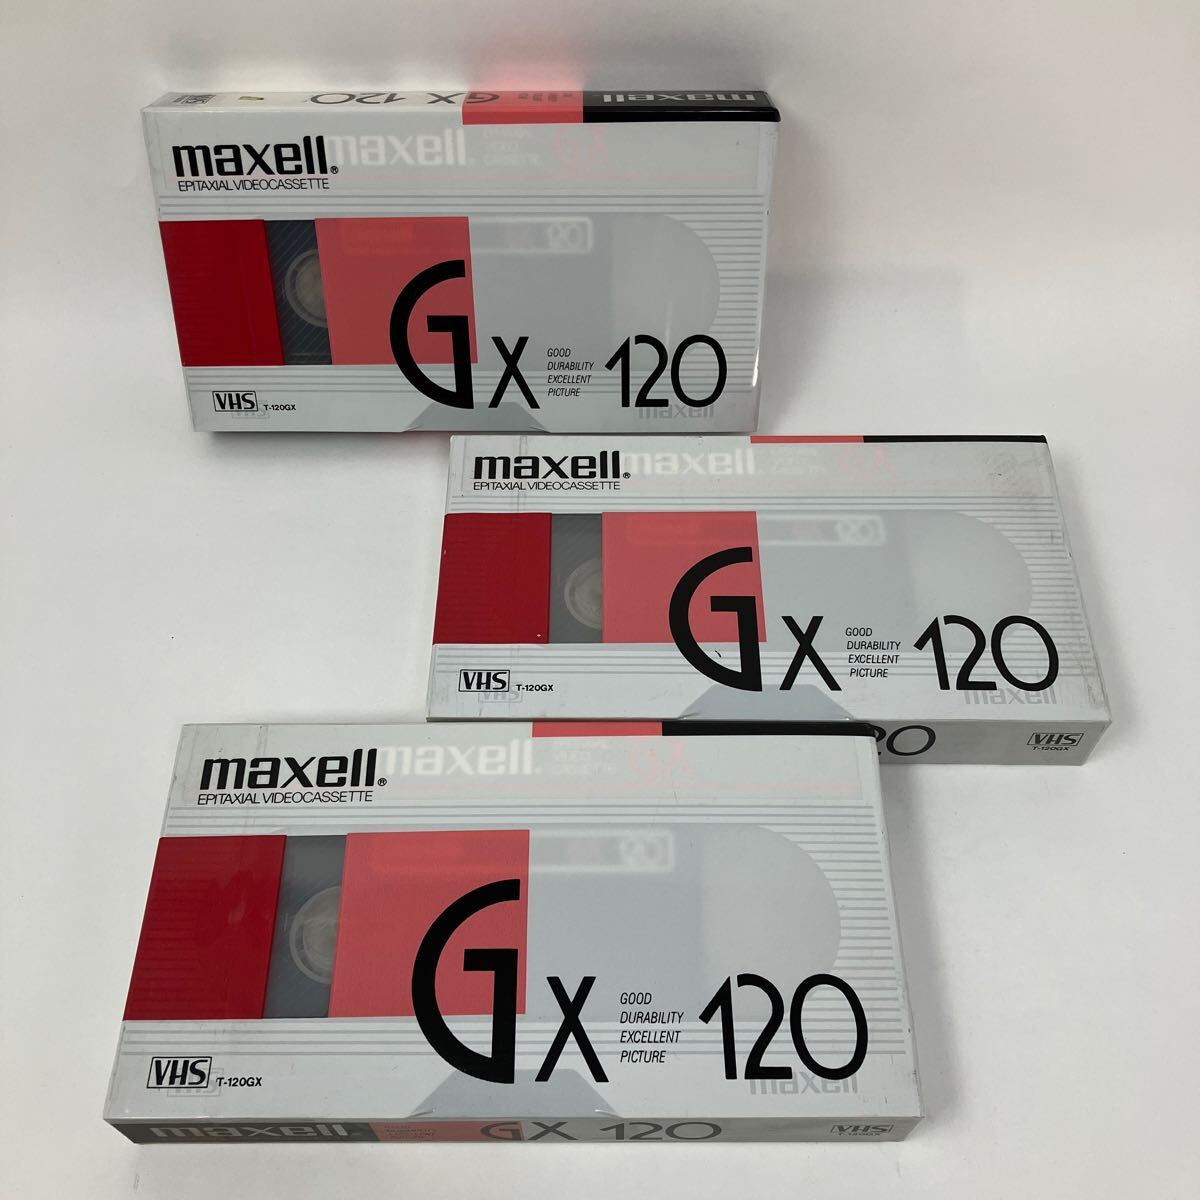 Y0315m【VHS】まとめ3本 カセットテープ マクセル maxell 未開封 GX120の画像1